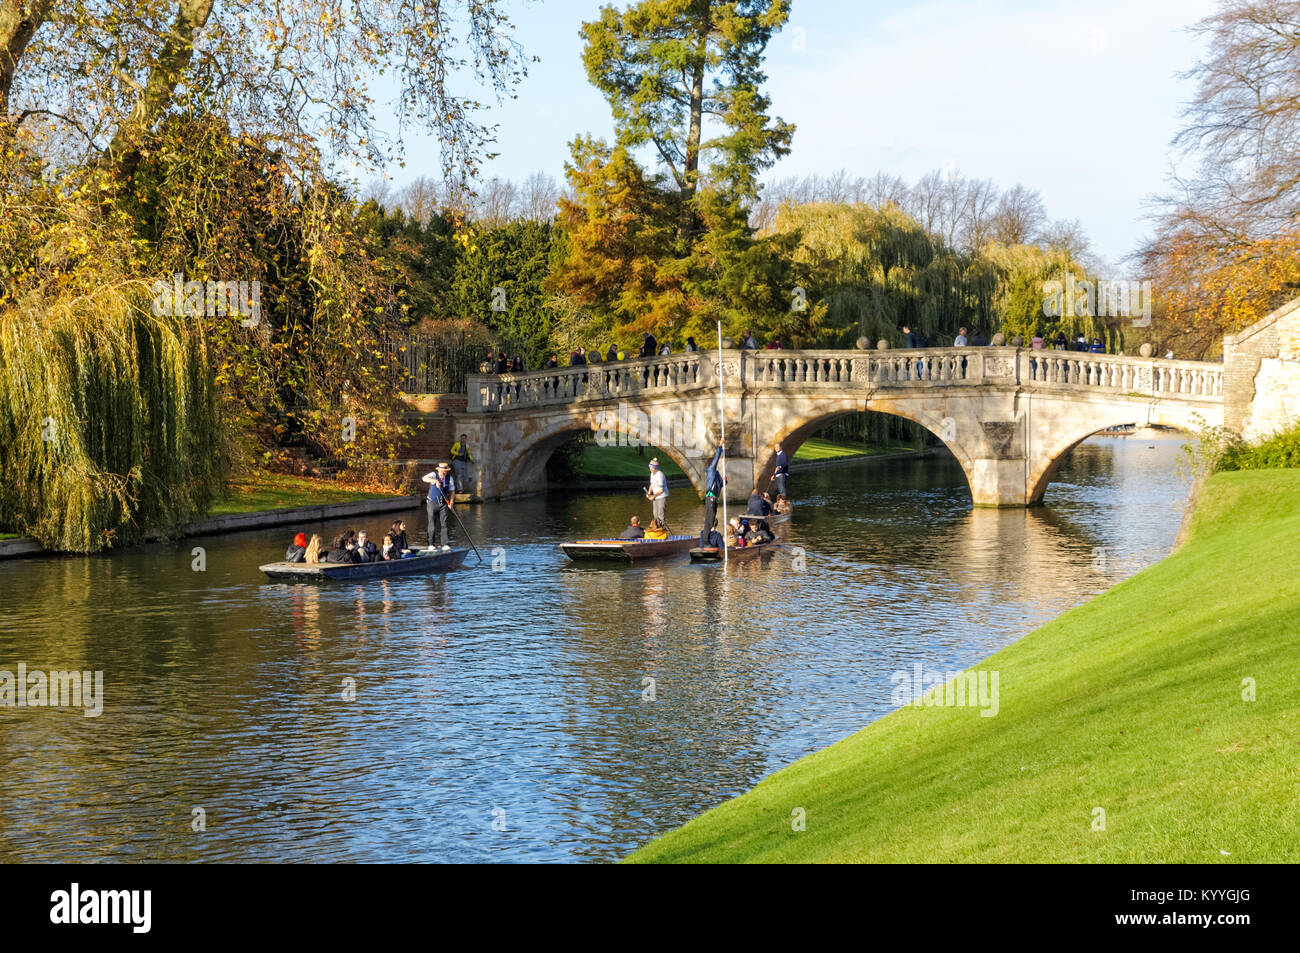 Clare Pont sur la rivière Cam en automne, Cambridge Cambridgeshire Angleterre Royaume-Uni UK Banque D'Images